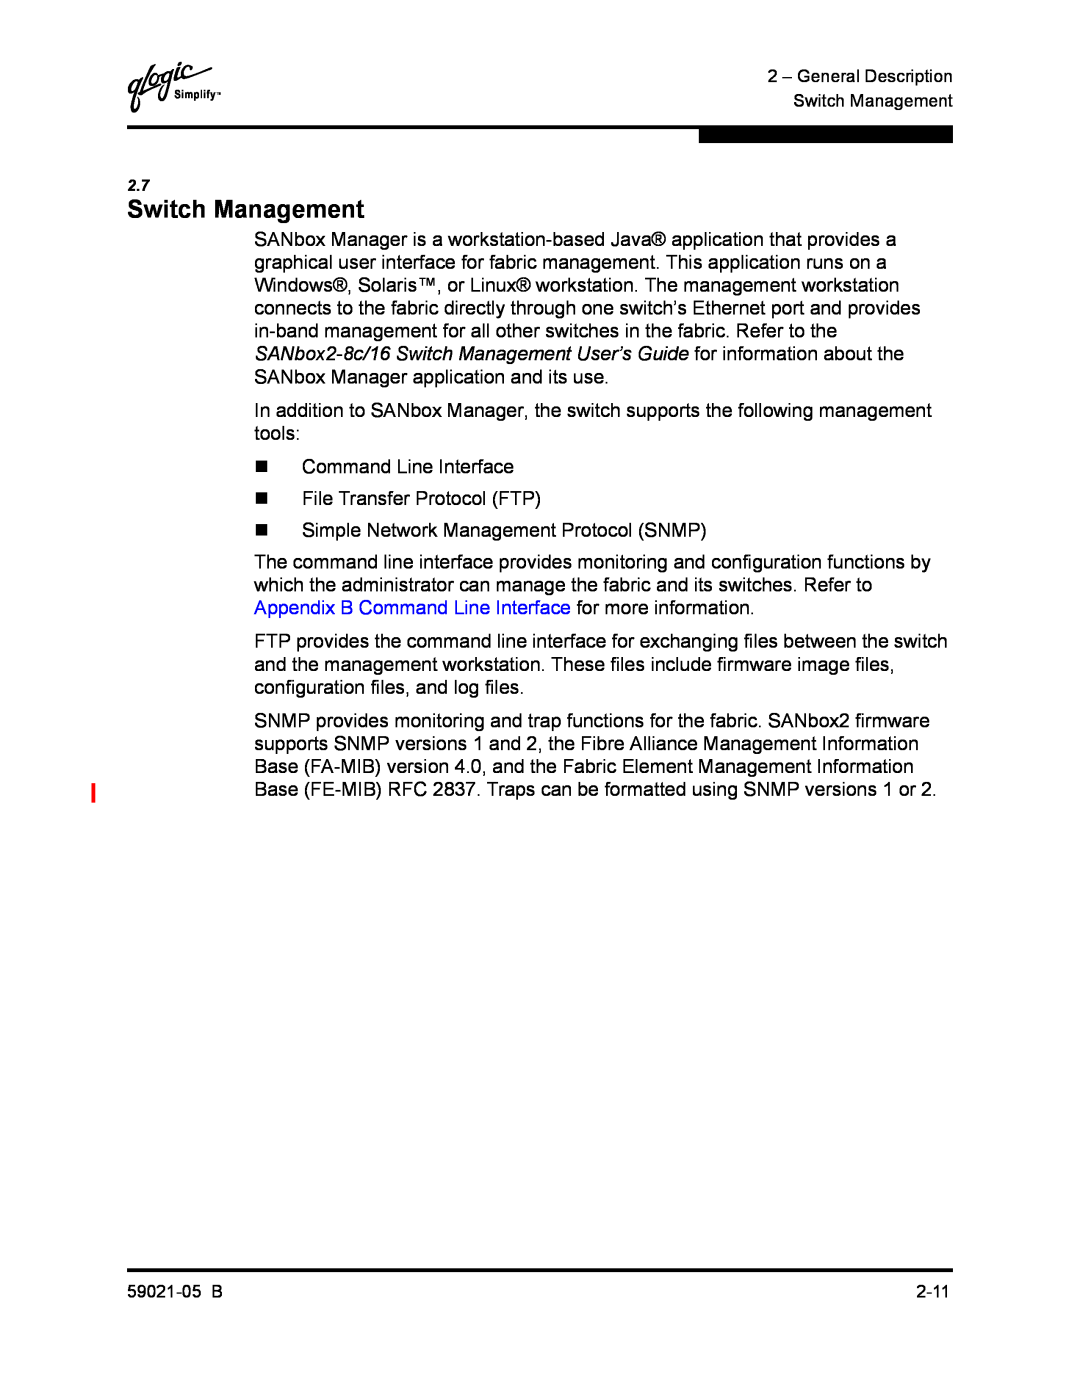 Q-Logic 59021-05 B manual Switch Management 